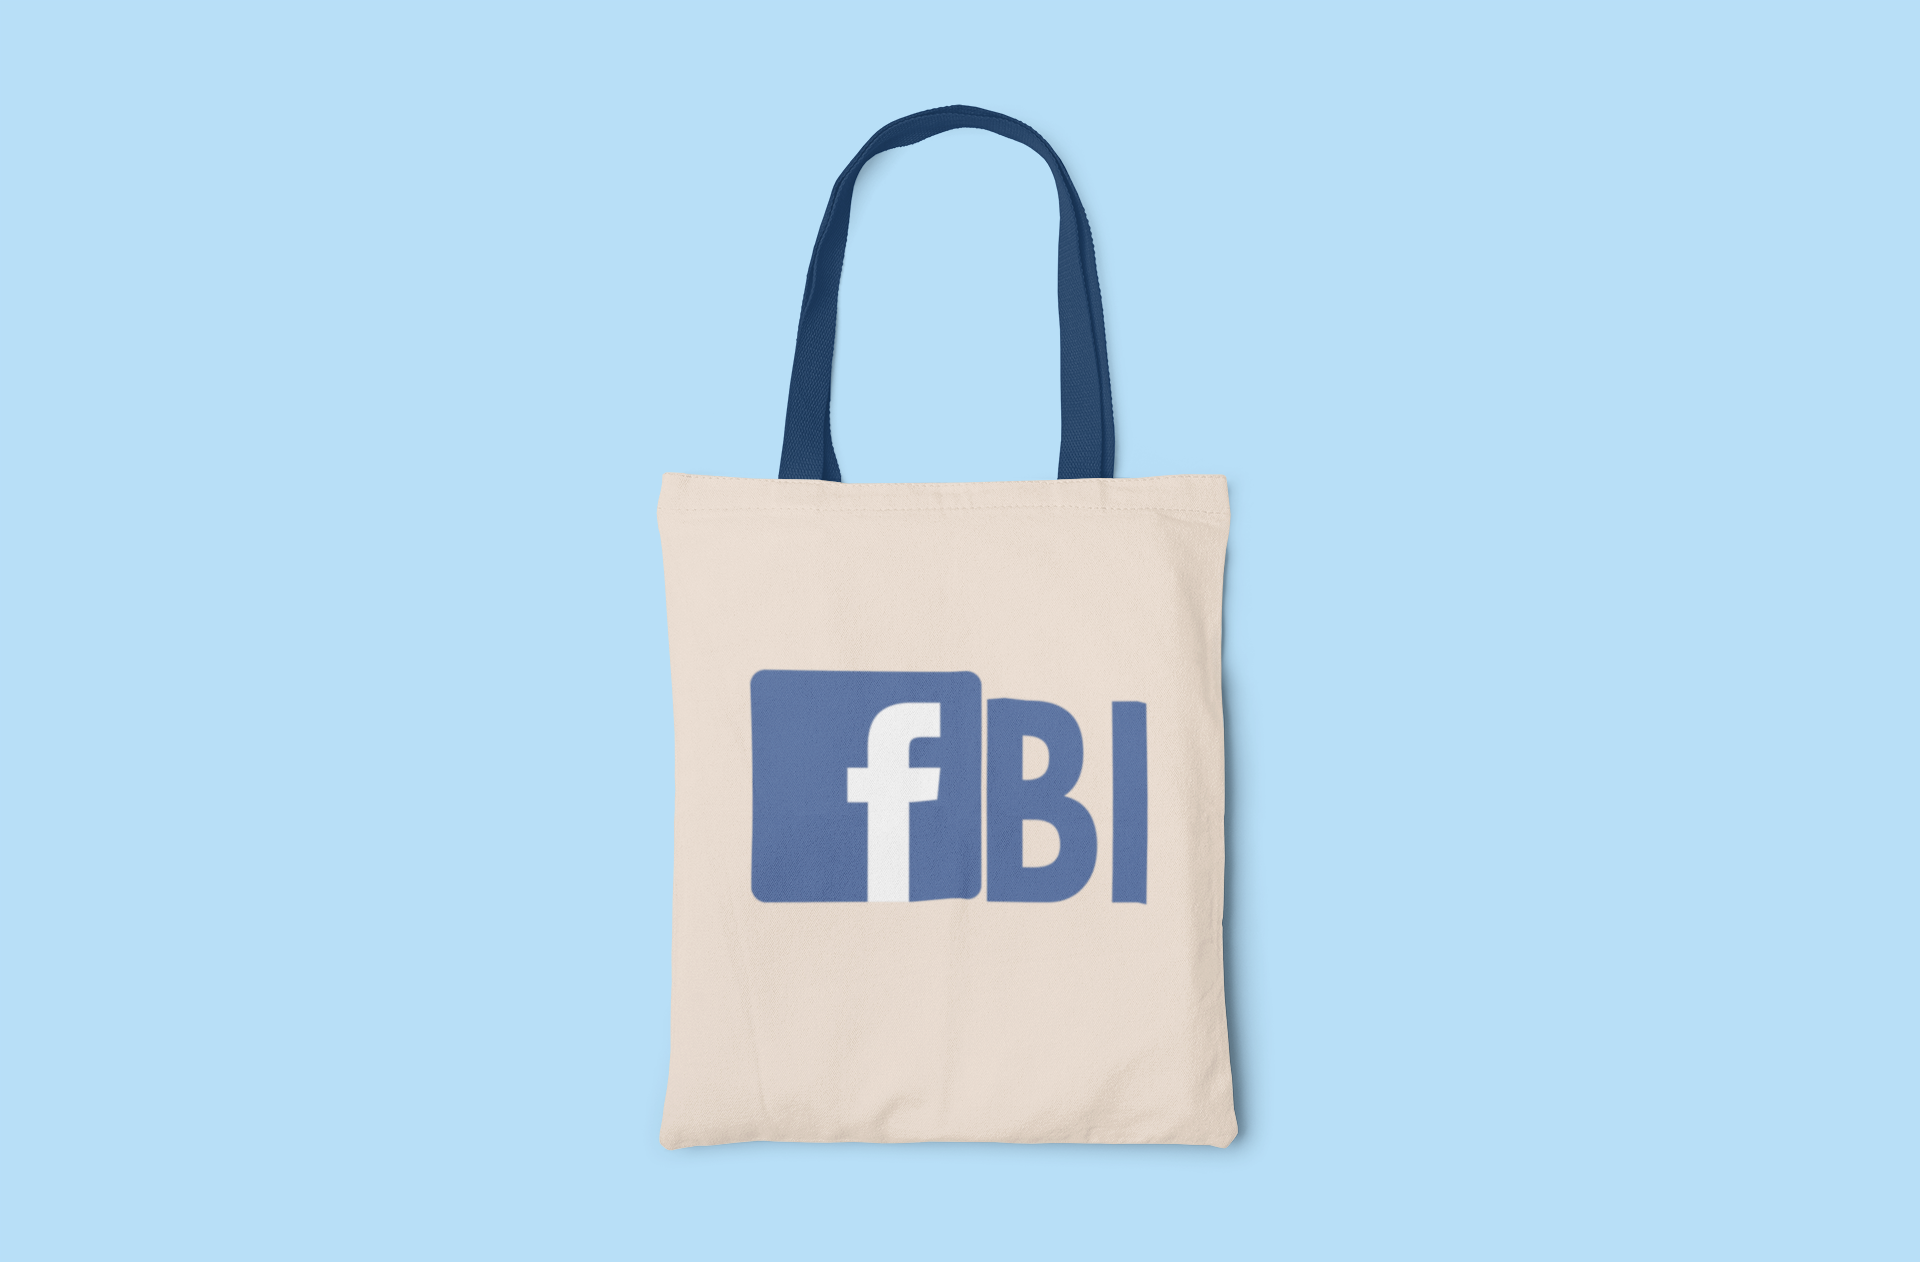 FB/FBI Tote Bag